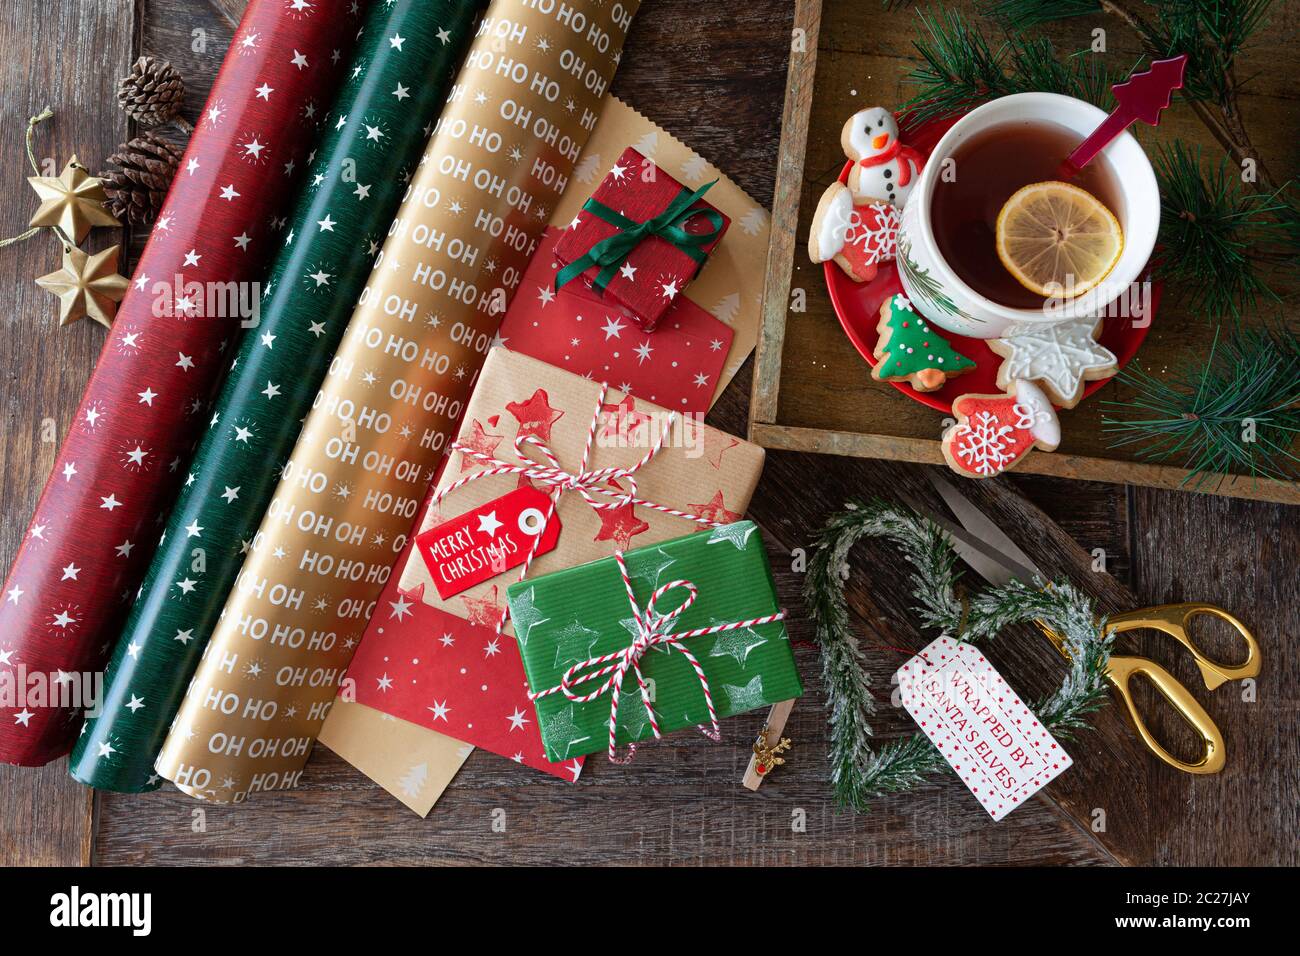 Wickeln kleine Geschenke mit bunten Papier für Weihnachten Stockfotografie  - Alamy